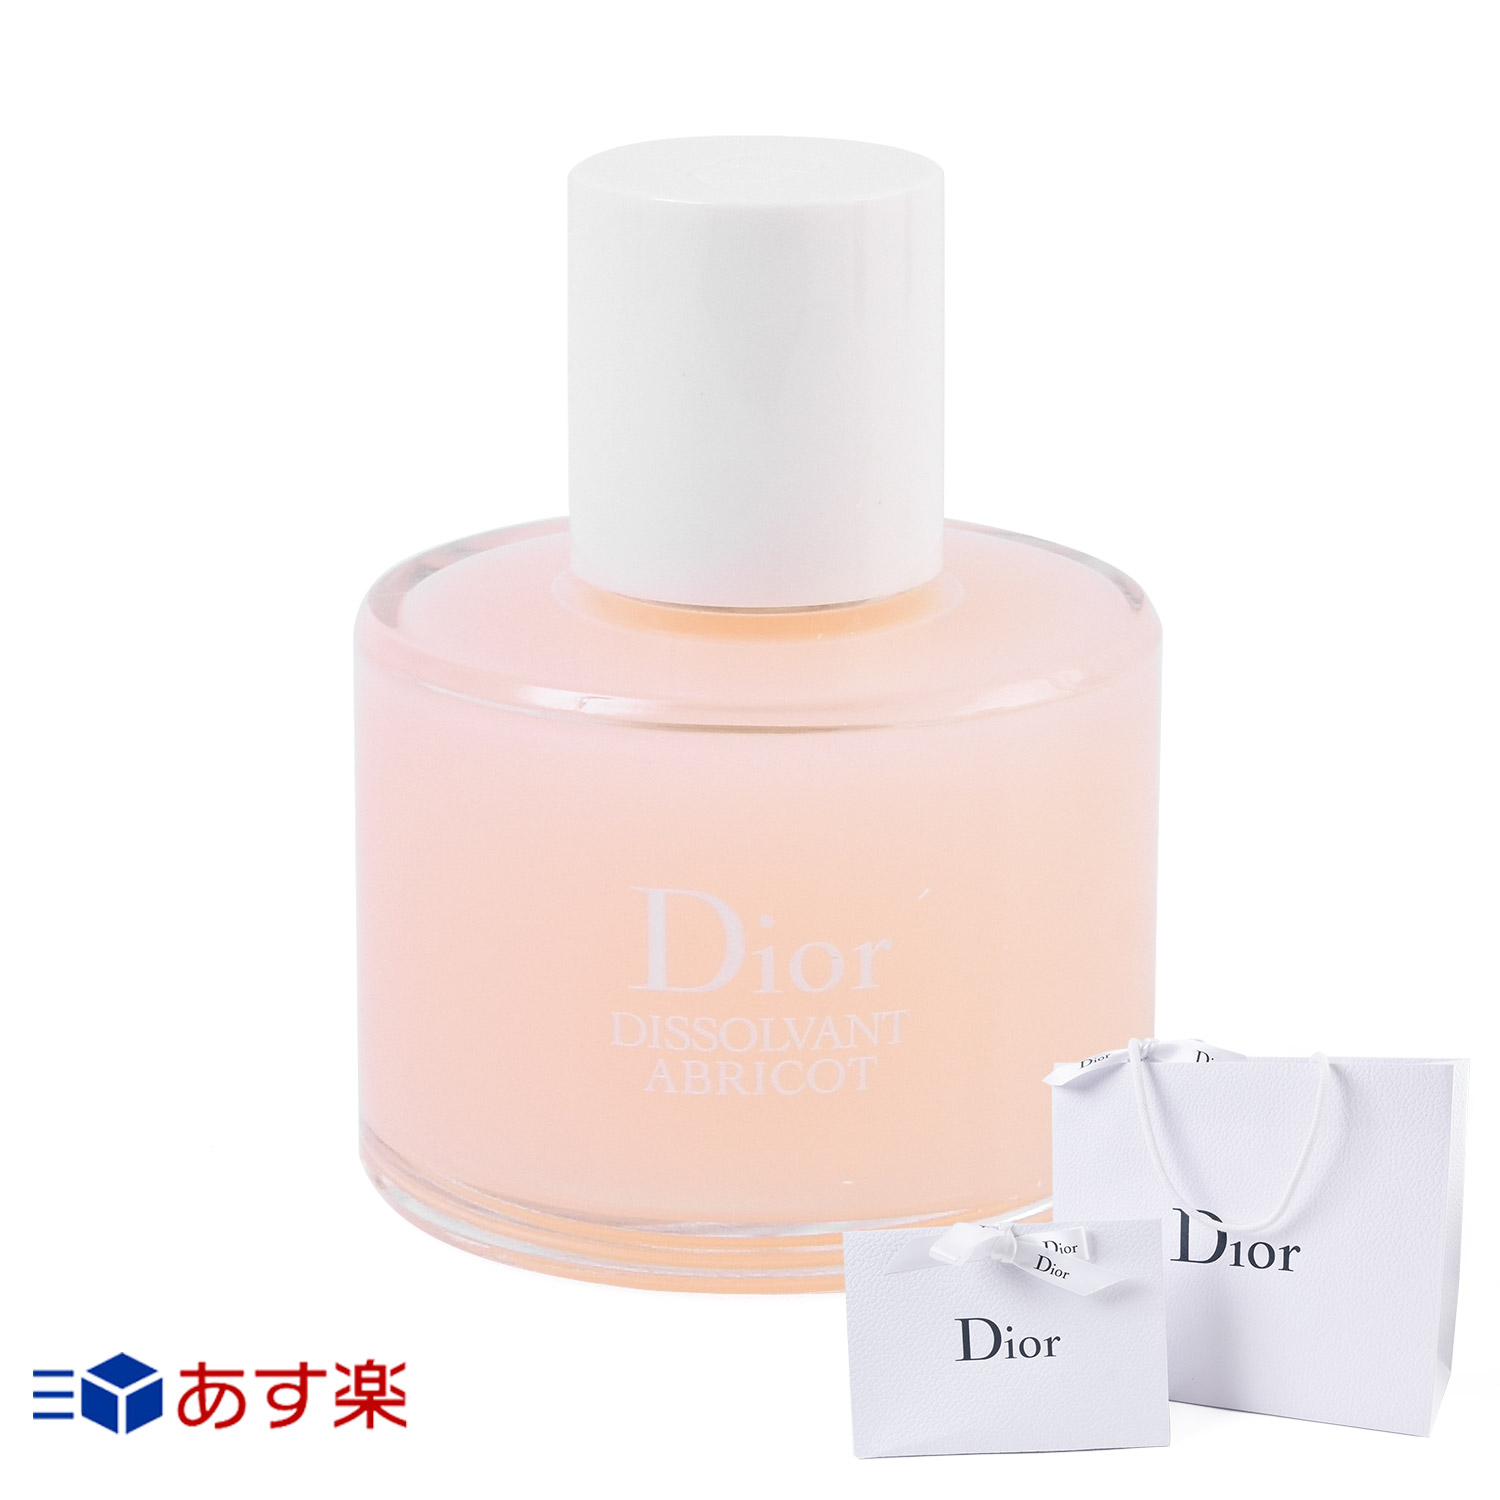 dior-022-50ml-w.jpg